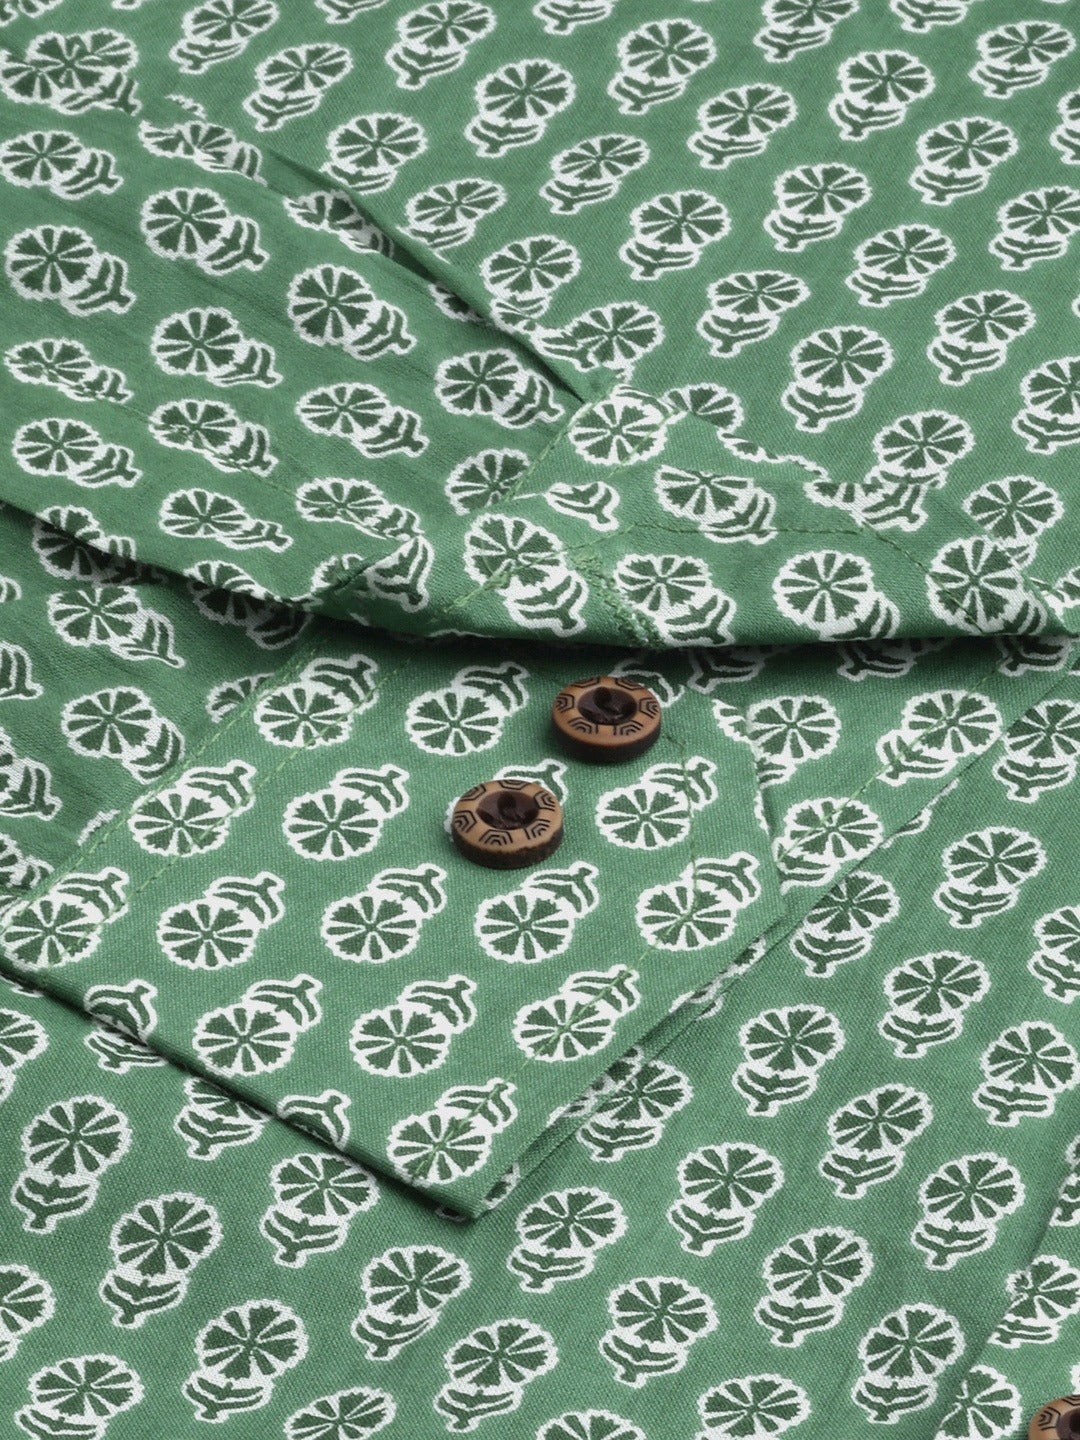 Millennial Green Comfort Printed Casual Shirt